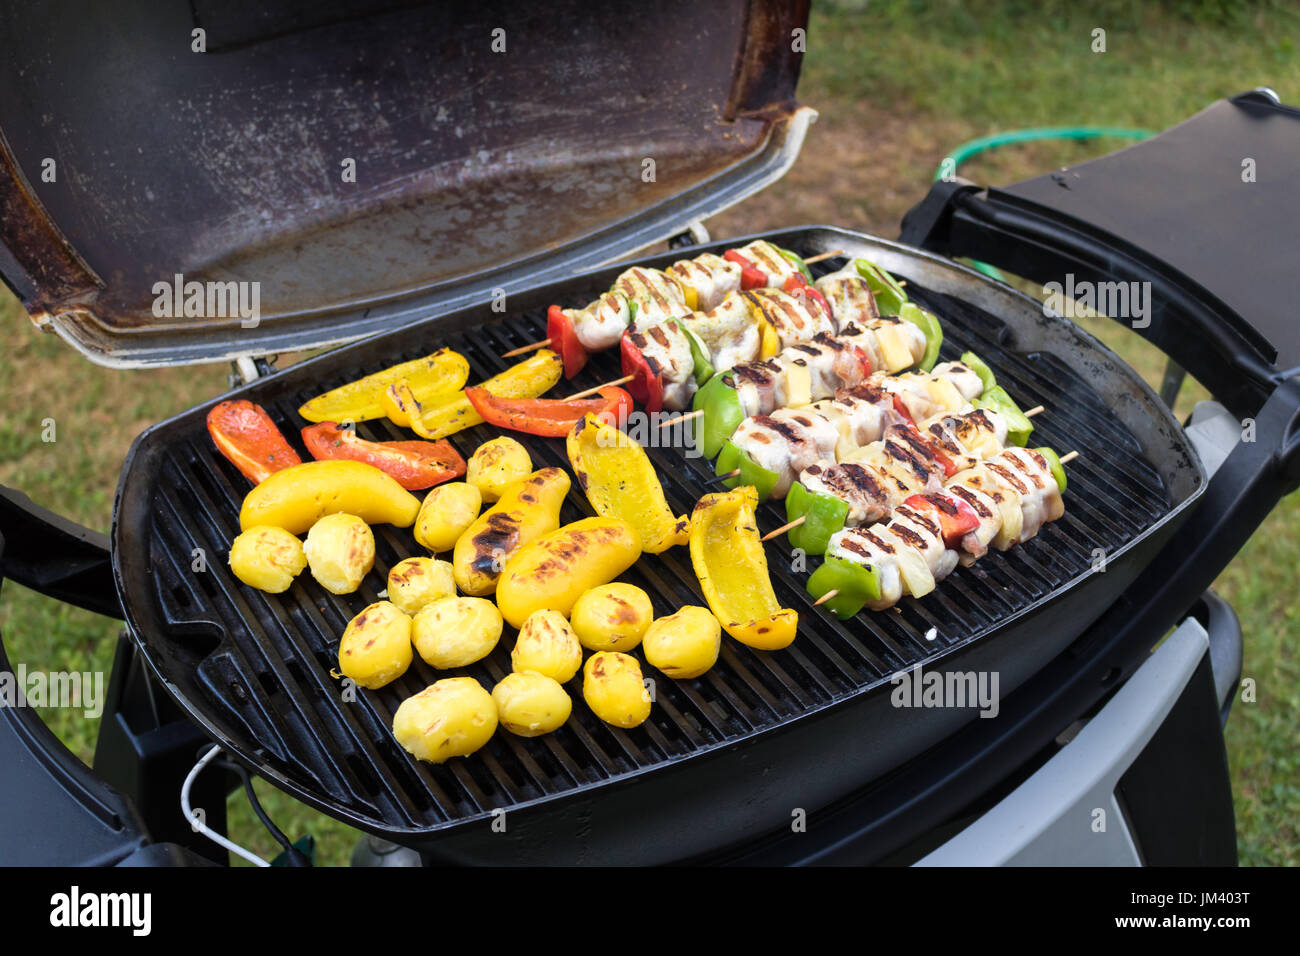 Un assortiment de grillades de viande avec légumes sur les braises d'un barbecue, close-up. Banque D'Images